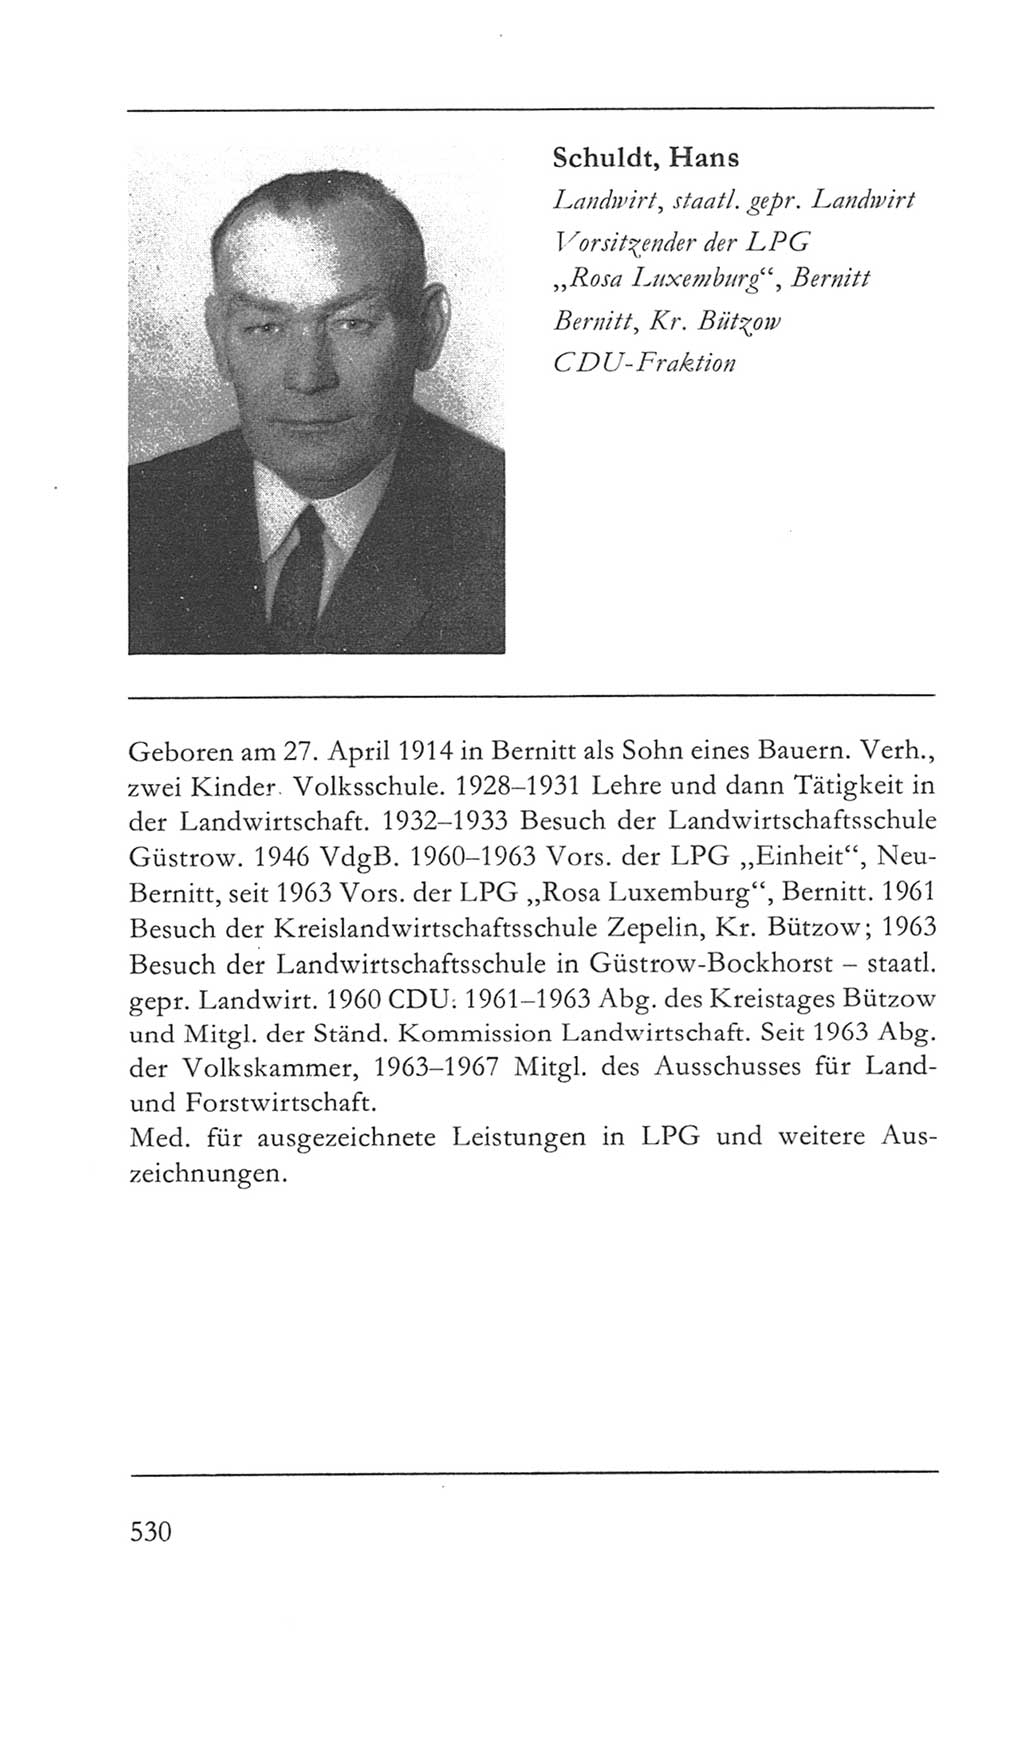 Volkskammer (VK) der Deutschen Demokratischen Republik (DDR) 5. Wahlperiode 1967-1971, Seite 530 (VK. DDR 5. WP. 1967-1971, S. 530)